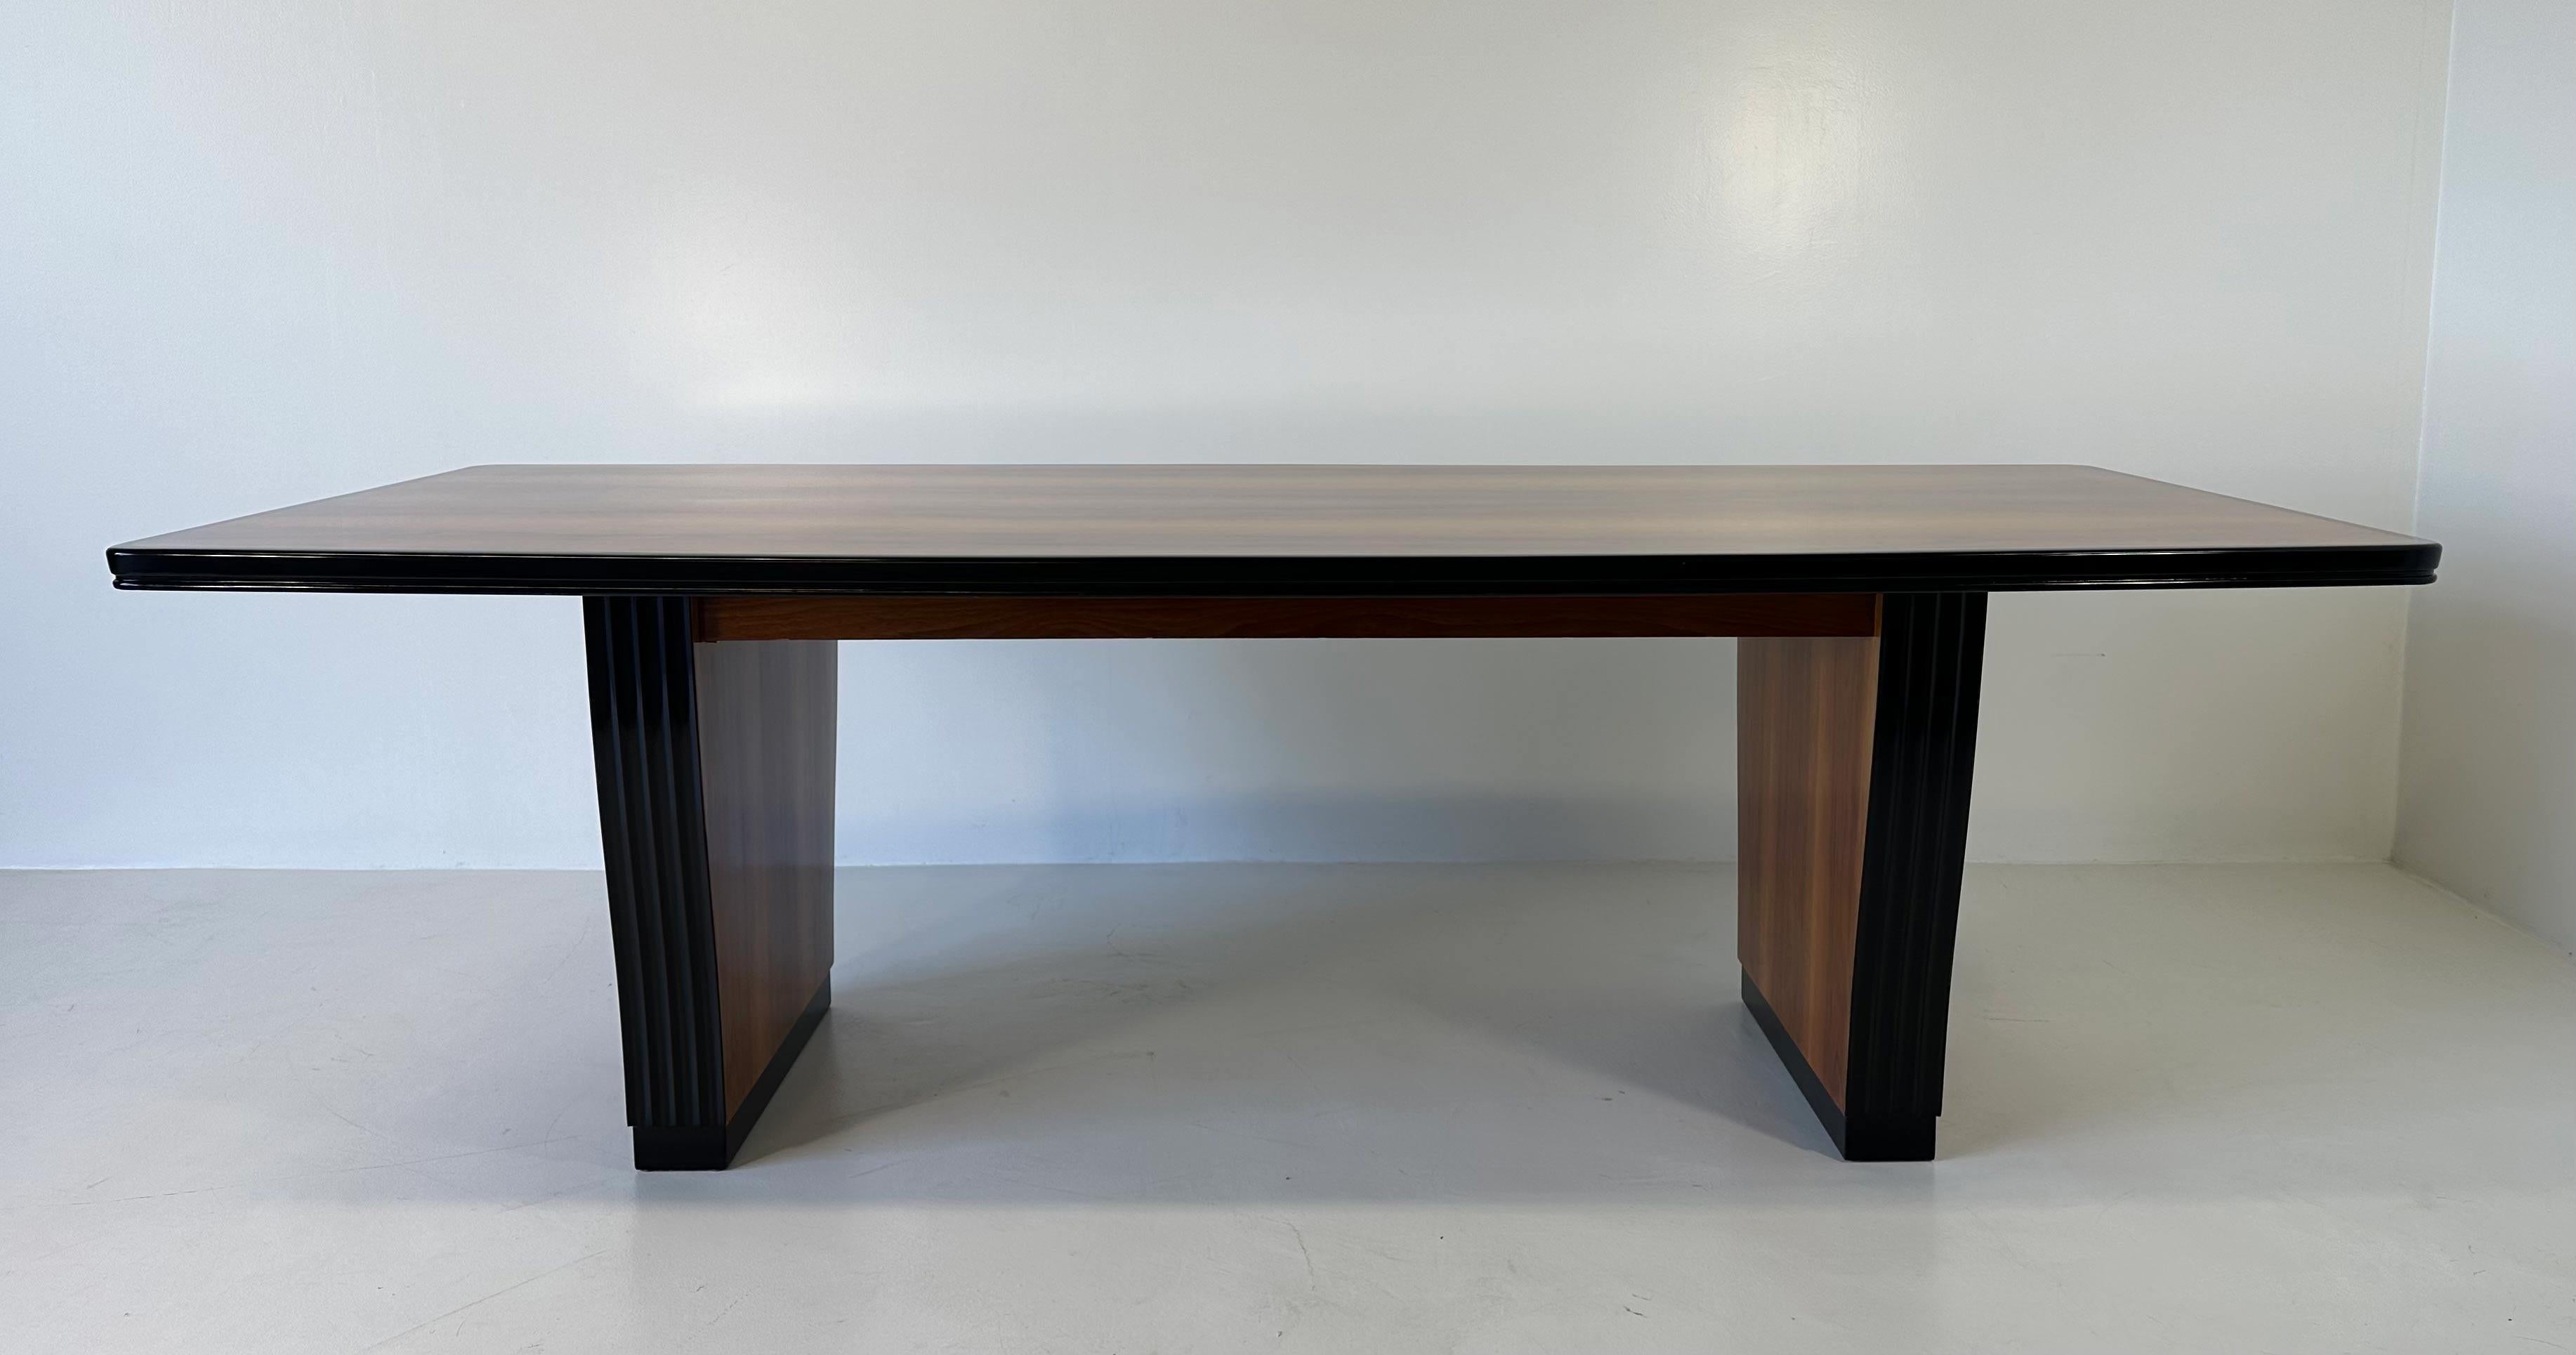 Dieser Art-Déco-Tisch wurde in den 1930er Jahren in Italien hergestellt. 
Es ist komplett aus Nussbaumholz gefertigt und wird von schwarz lackierten Profilen eingerahmt. 
Vollständig restauriert. 